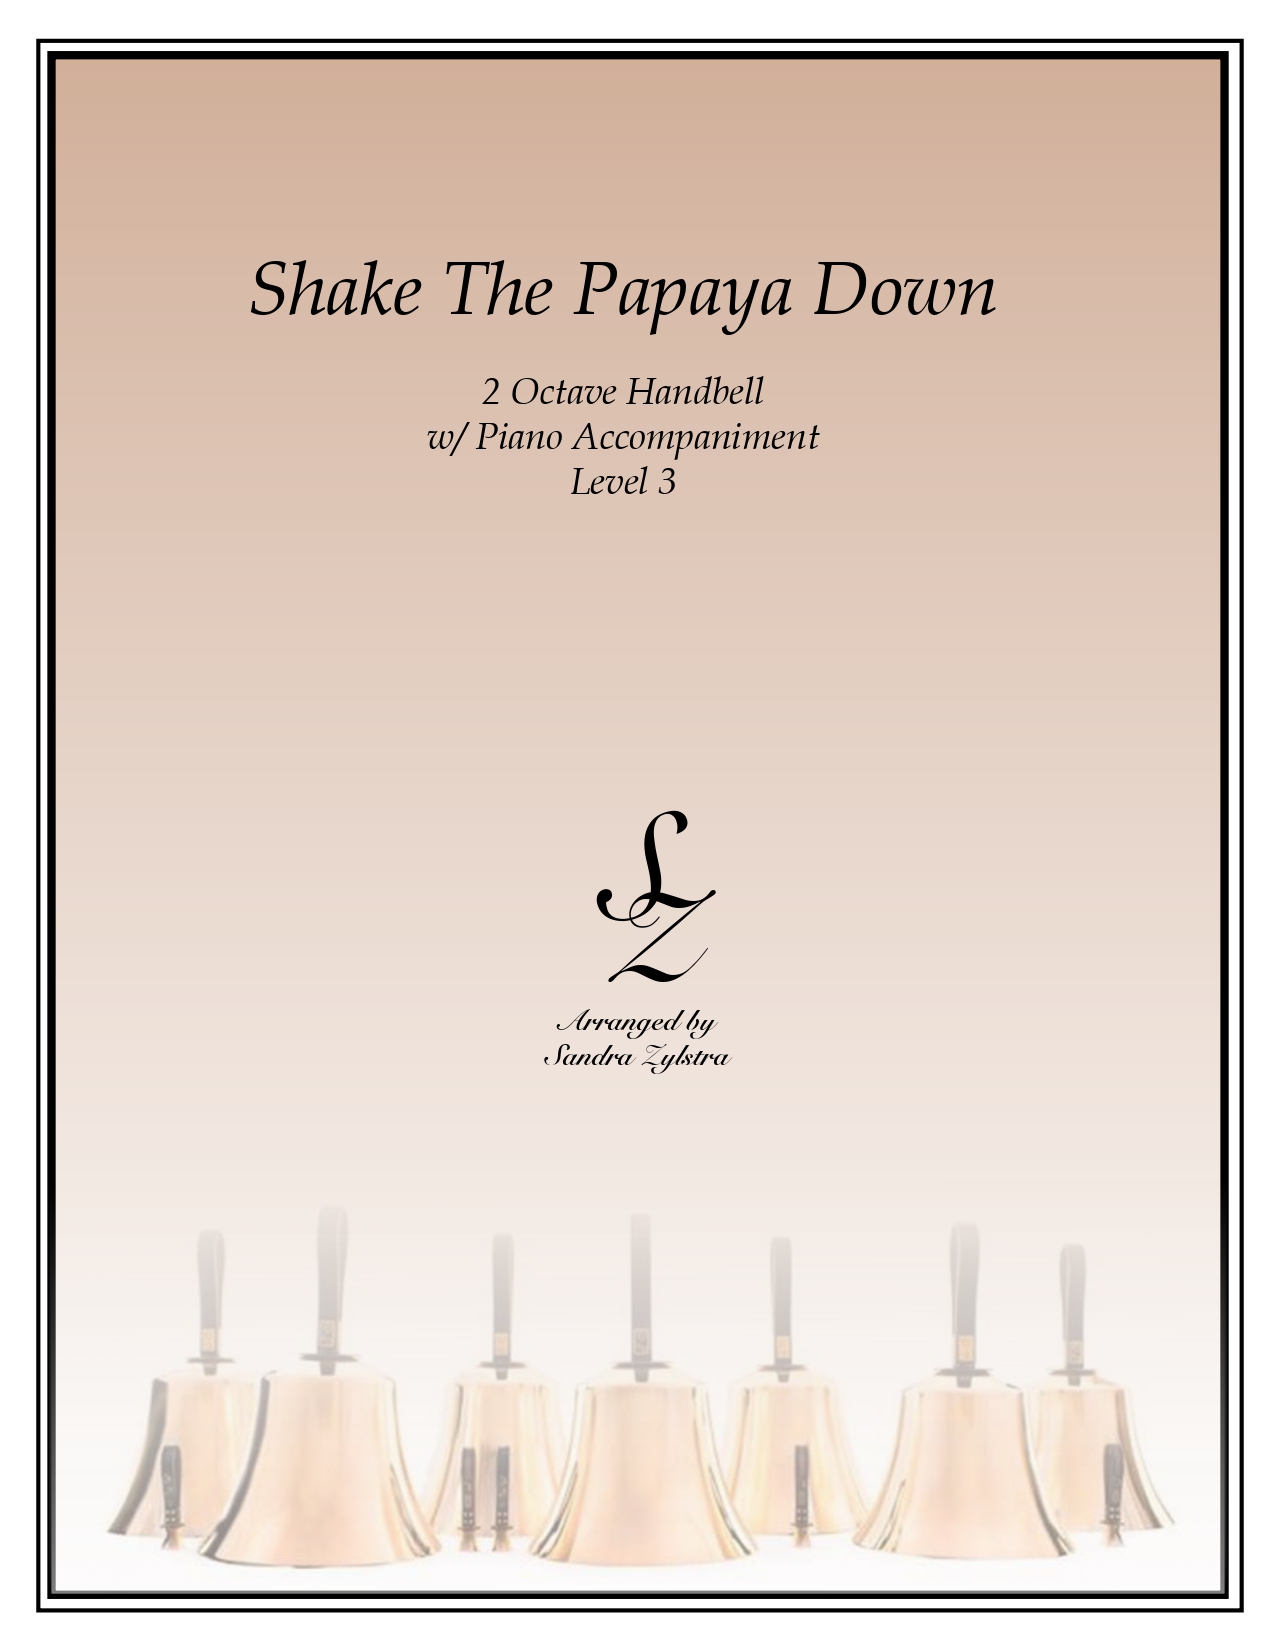 Shake The Papaya Down 2 octave handbells parts cover page 00011